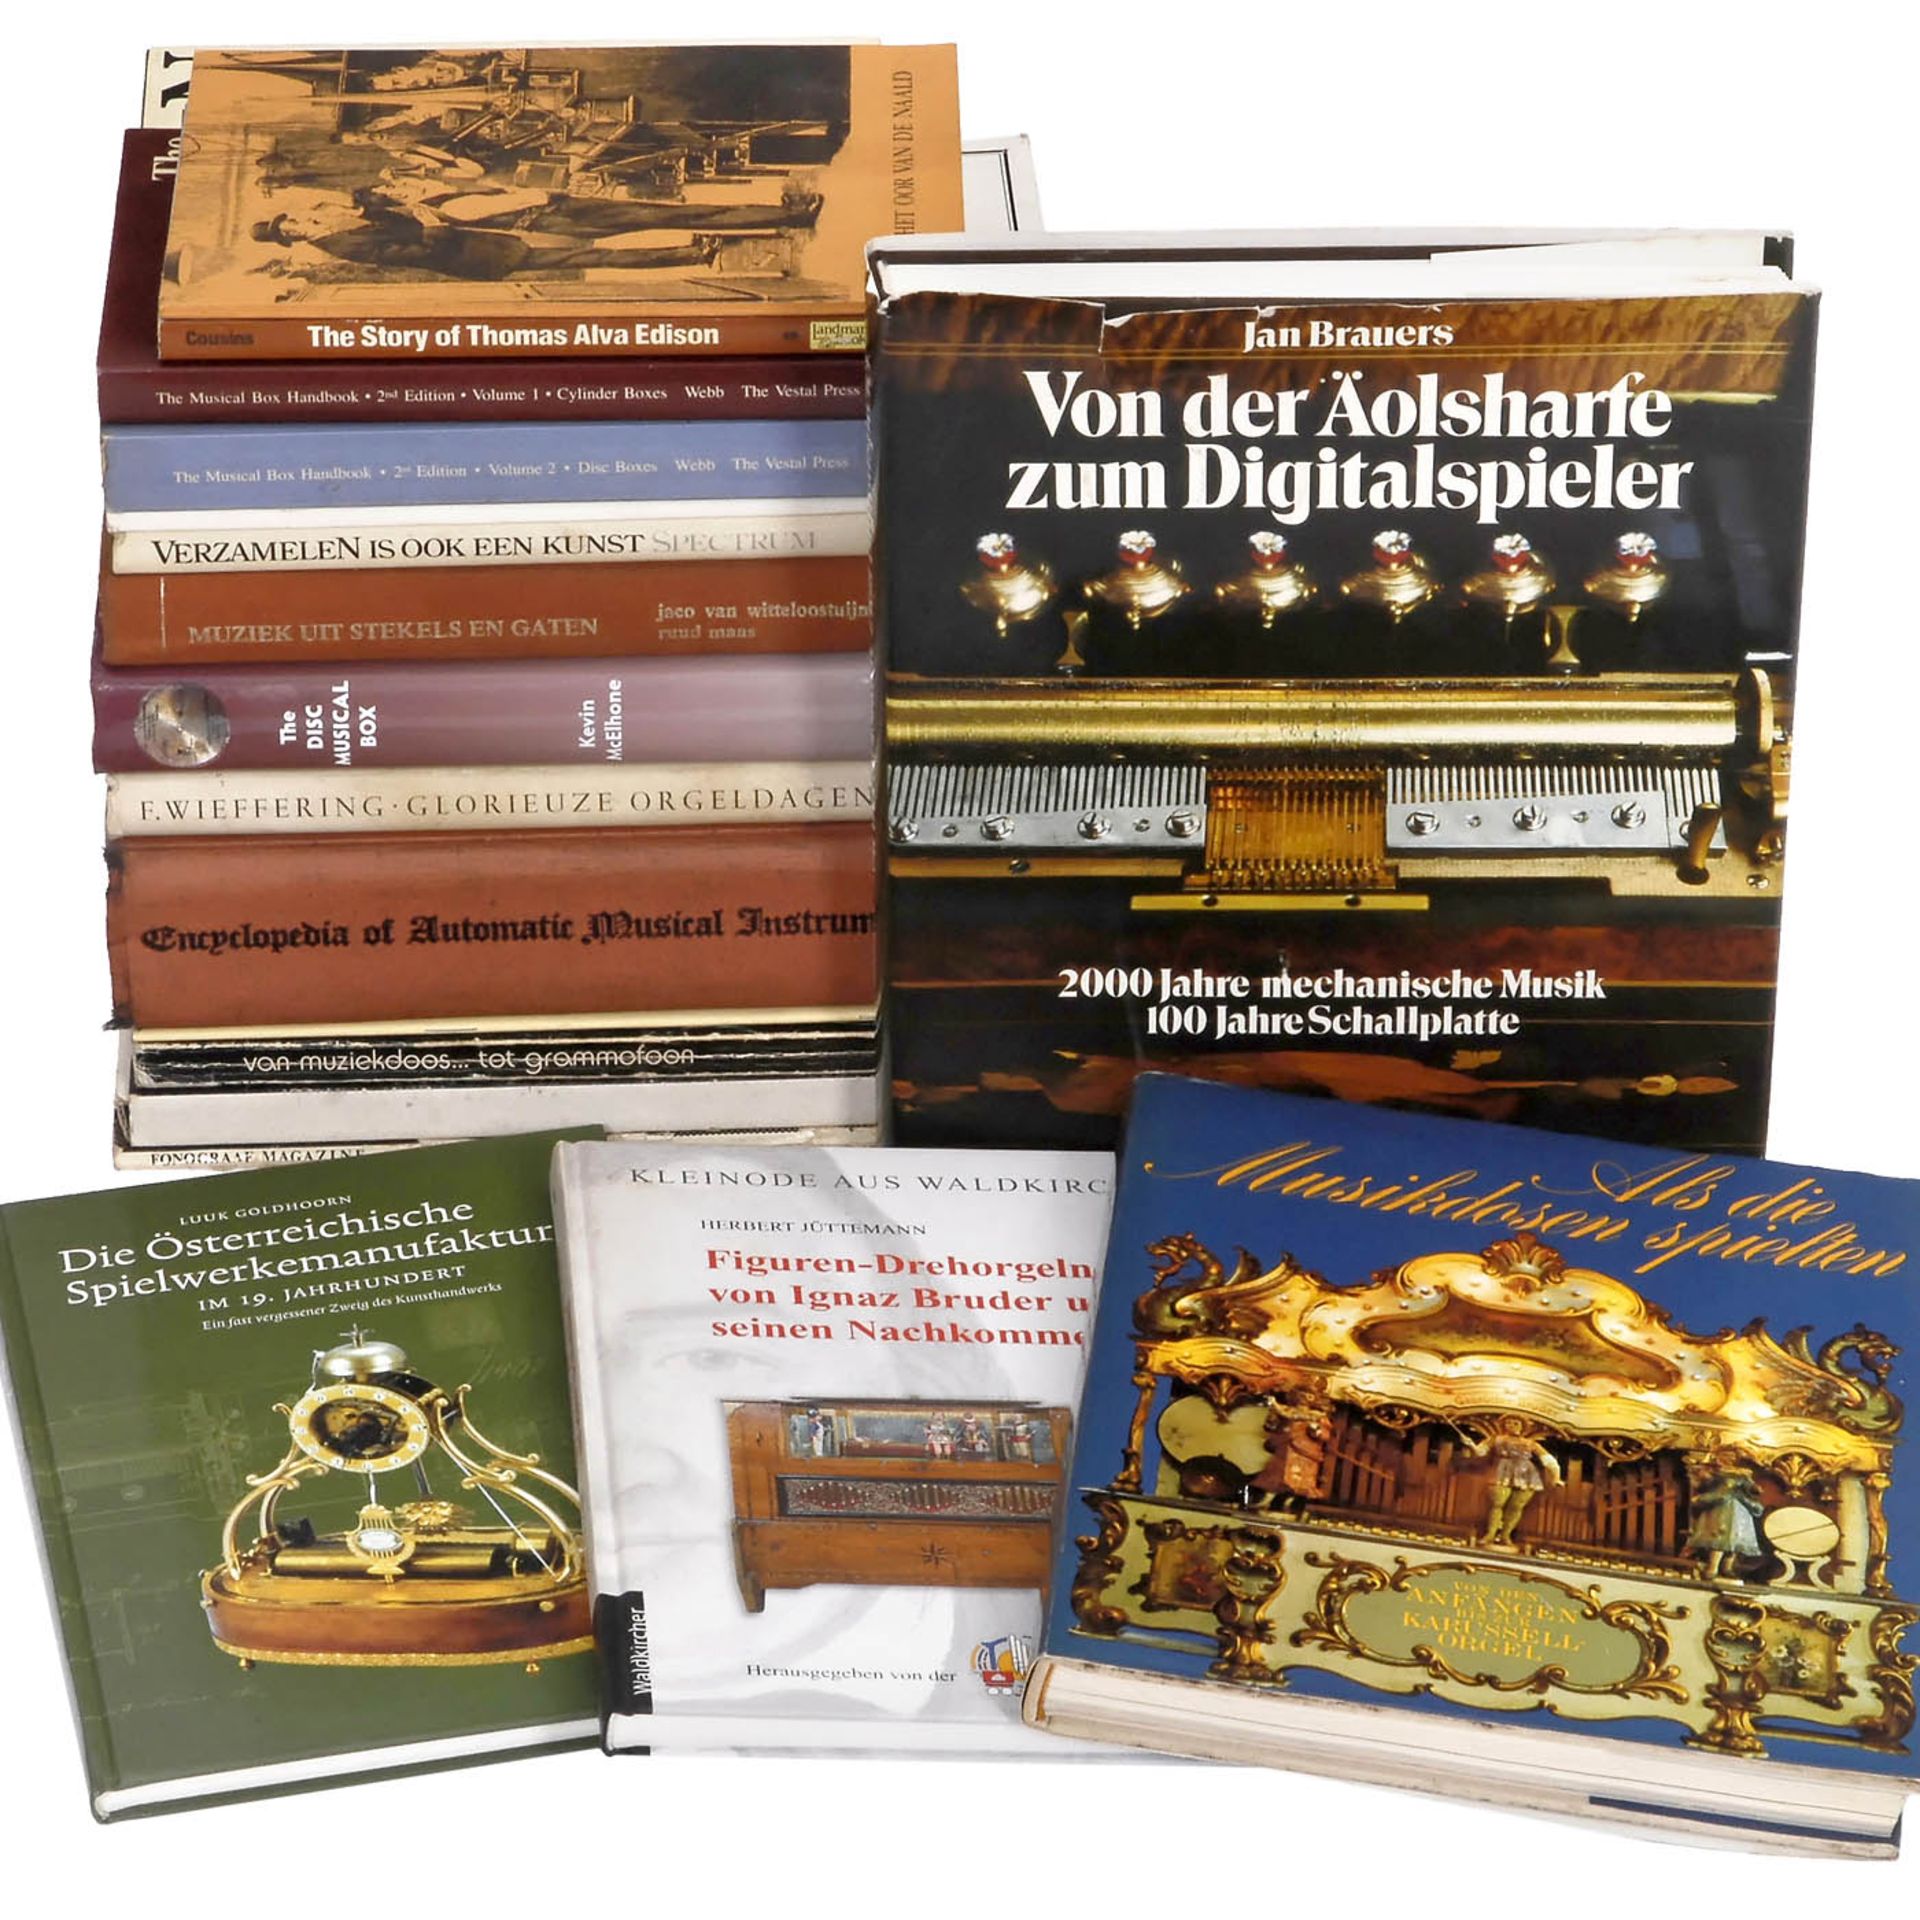 Bücher und Zeitschriften über mechanische Musikinstrumente und Grammophone 1) "Encyclopedia of